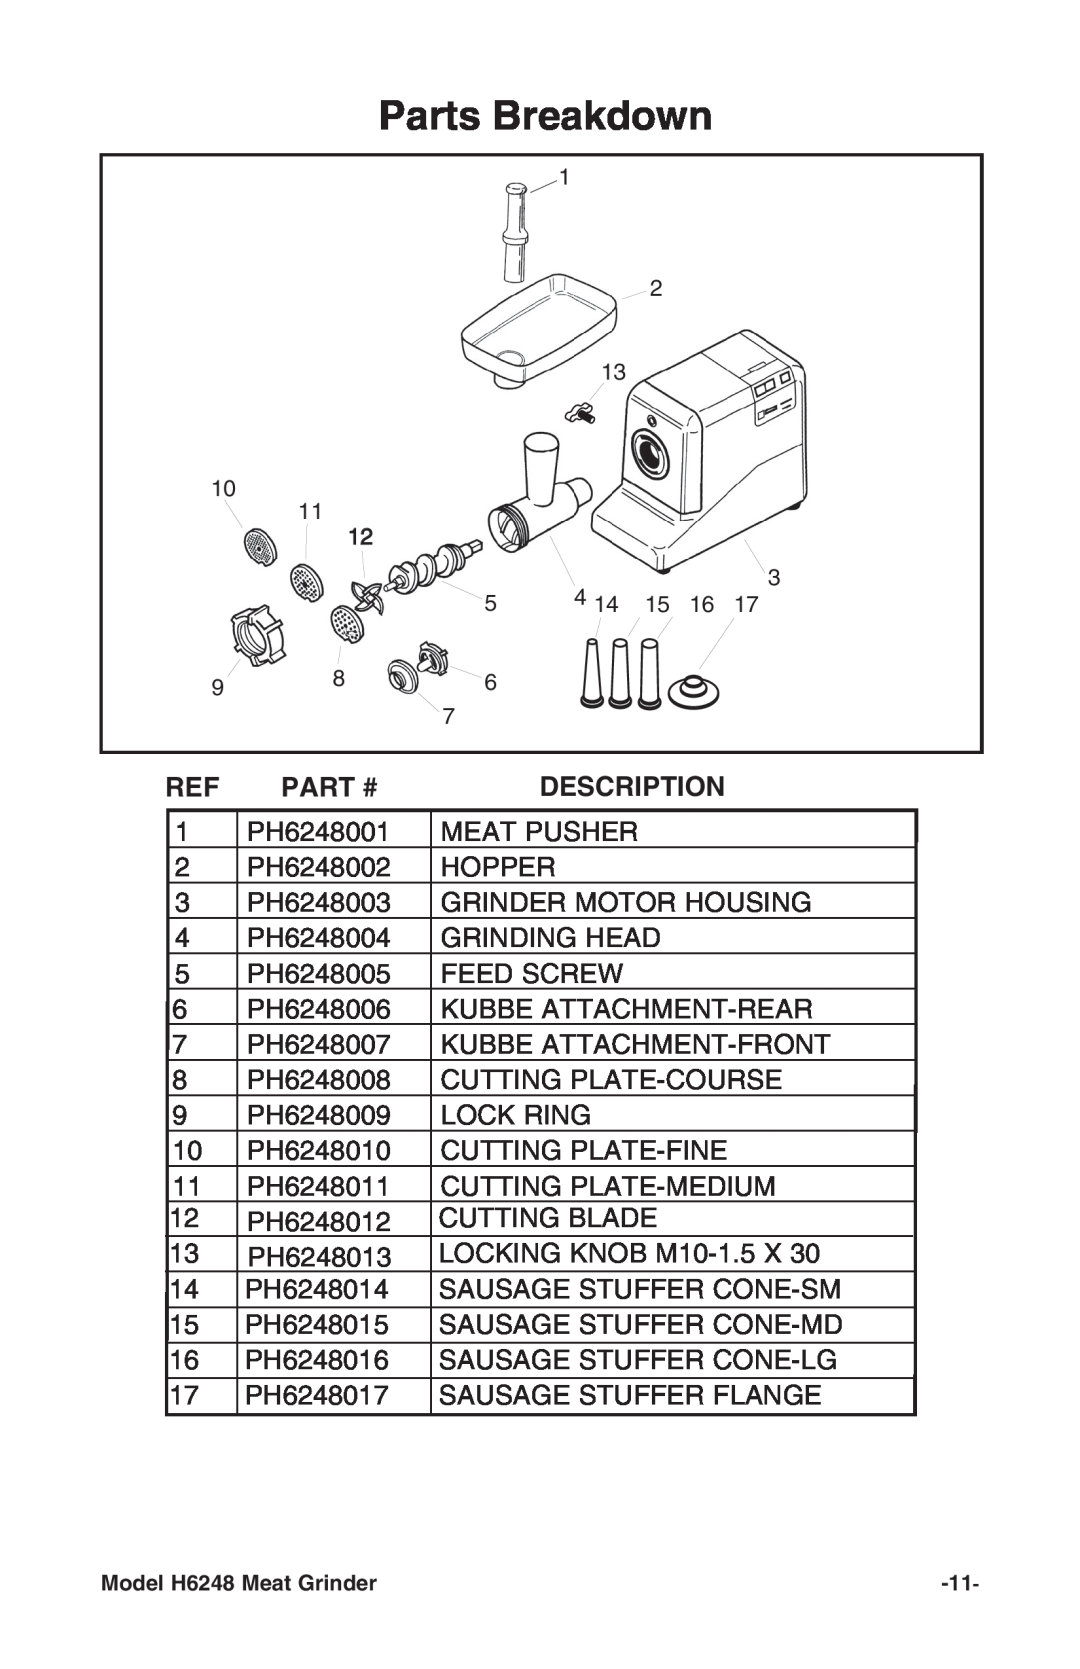 Grizzly H6248 instruction manual Part #, Description, Parts Breakdown 